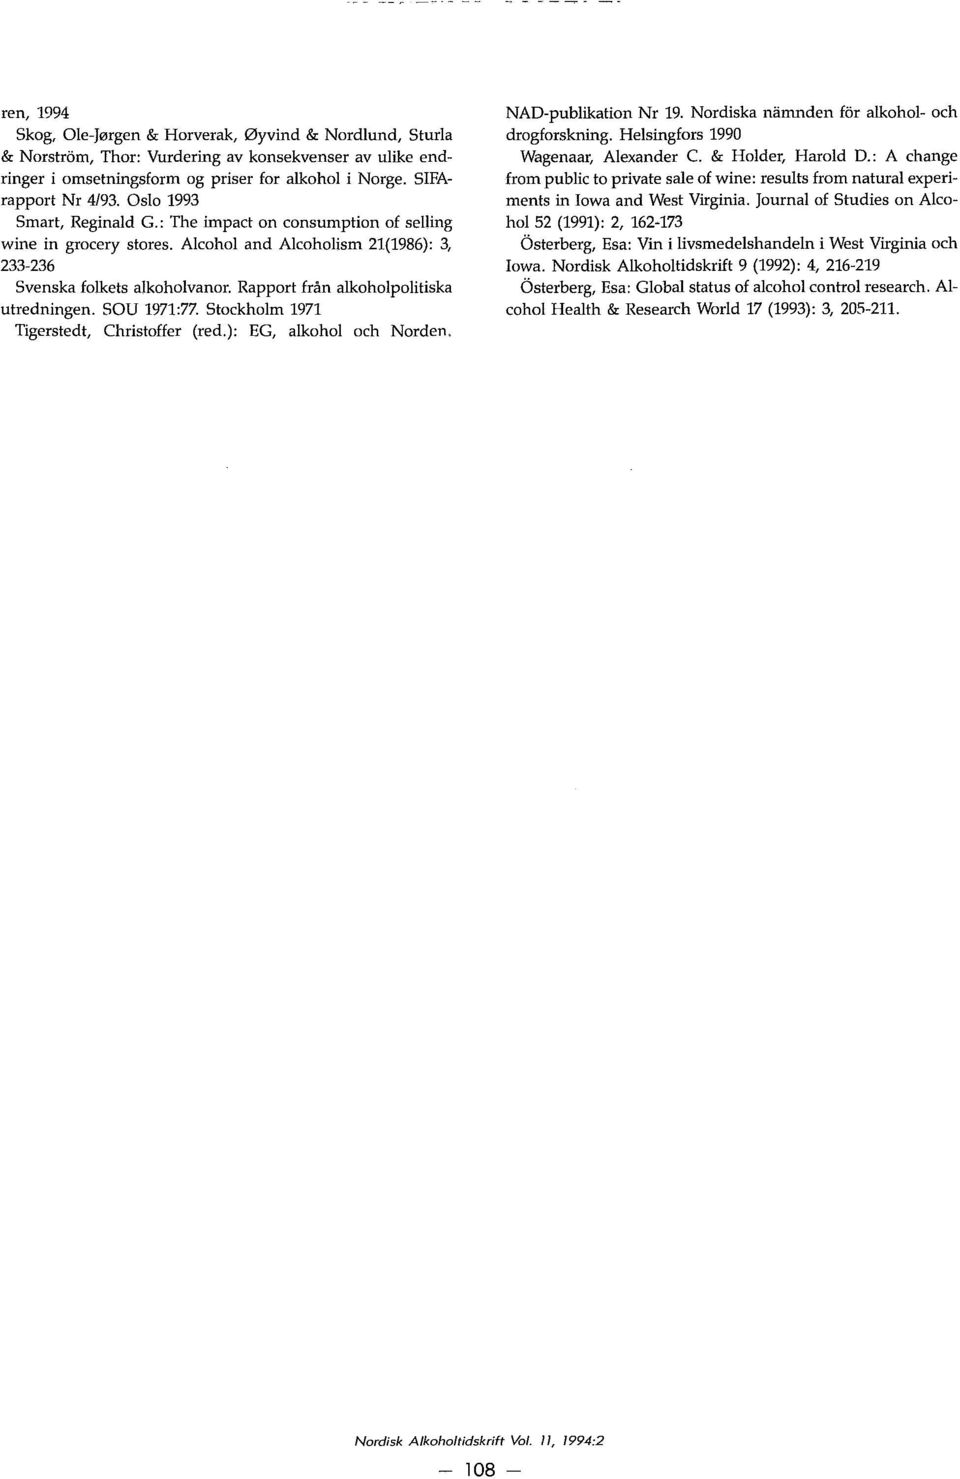 Rapport från alkoholpolitiska utredningen. SOU 1971:77. Stockholm 1971 Tigerstedt, Christoffer (red.): EG, alkohol och Norden. NAD-publikation Nr 19. Nordiska namnden for alkohol- och drogforskning.